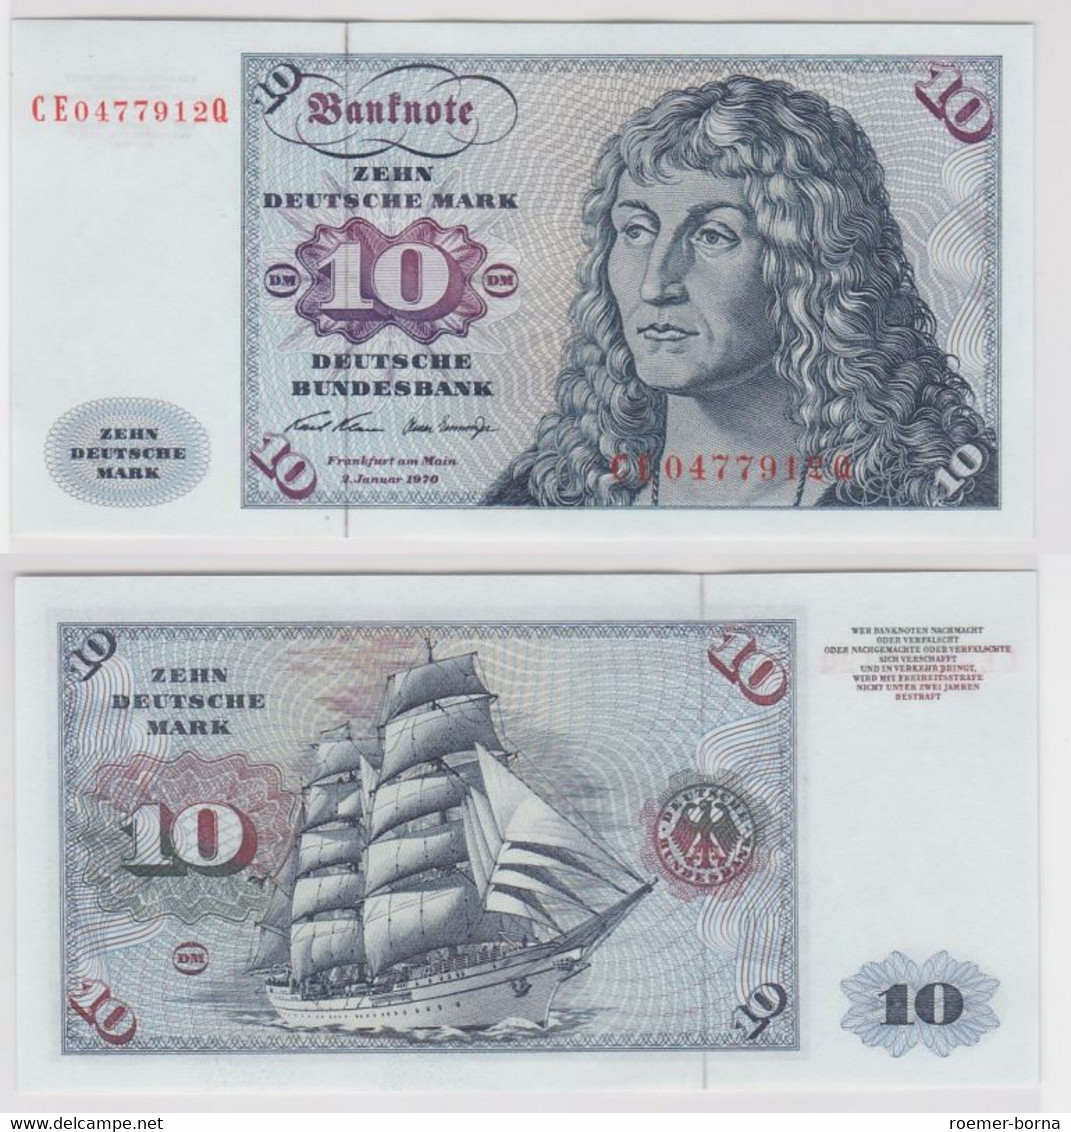 T146364 Banknote 10 DM Deutsche Mark Ro. 270b Schein 2.Jan. 1970 KN CE 0477912 Q - 10 DM